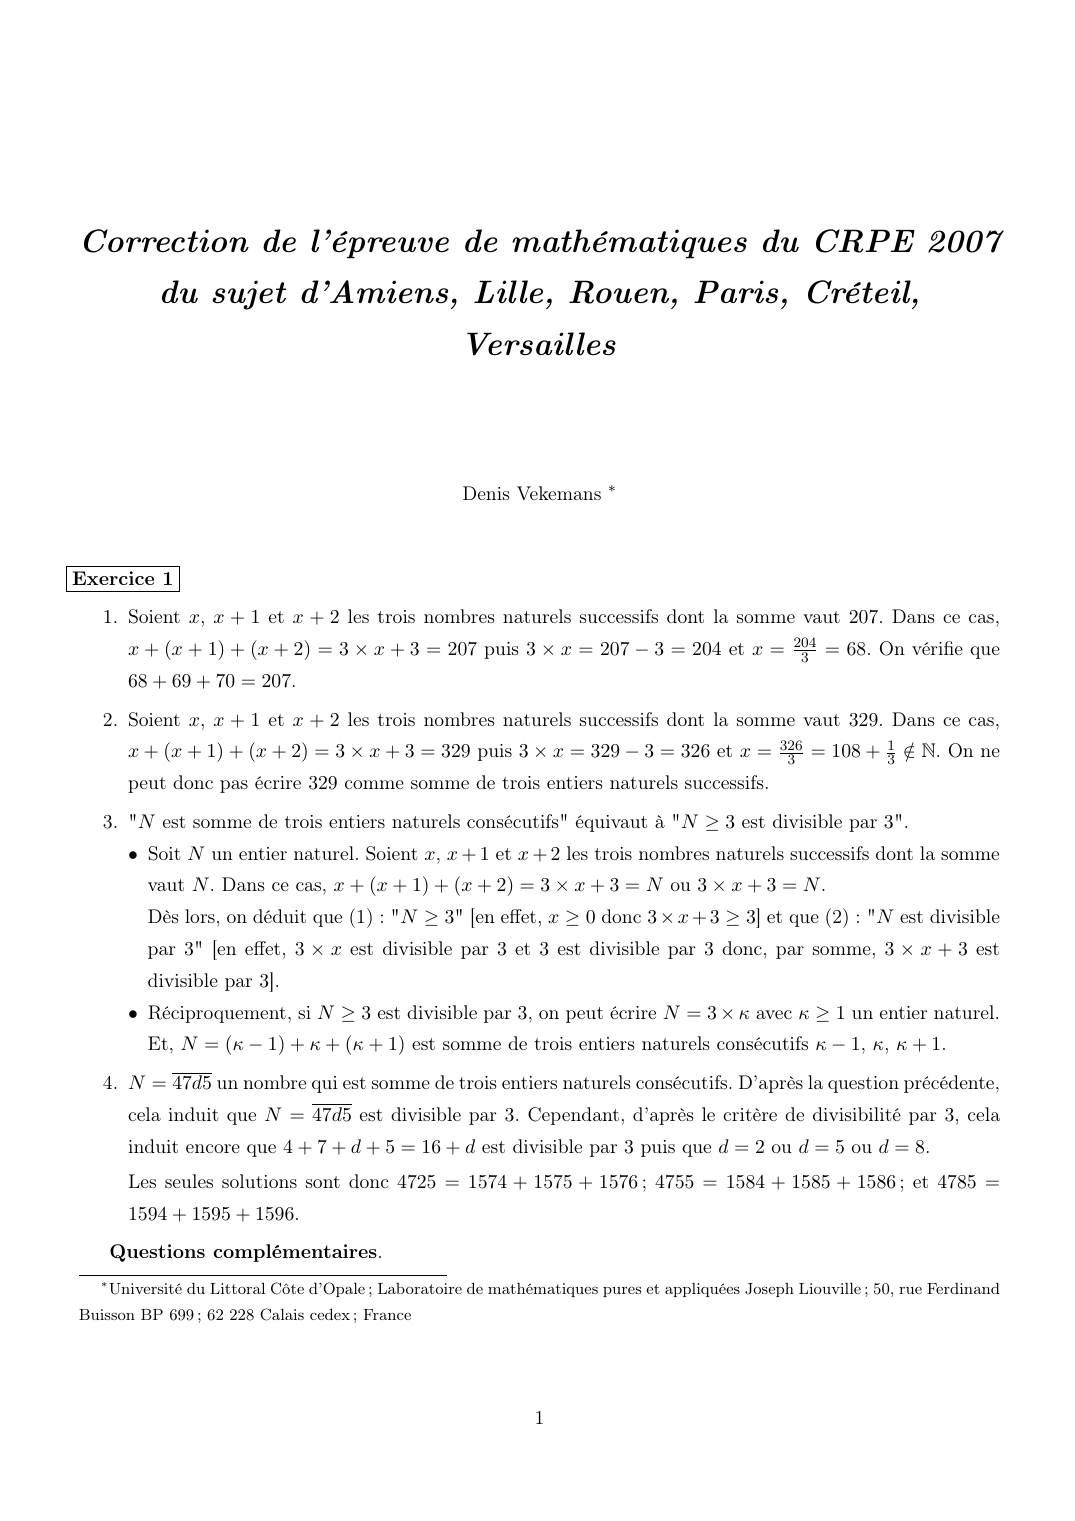 Prévisualisation du document Correction de l'épreuve de mathématiques du CRPE 2007du sujet d'Amiens, Lille, Rouen, Paris, Créteil,VersaillesDenis Vekemans*Exercice 11.